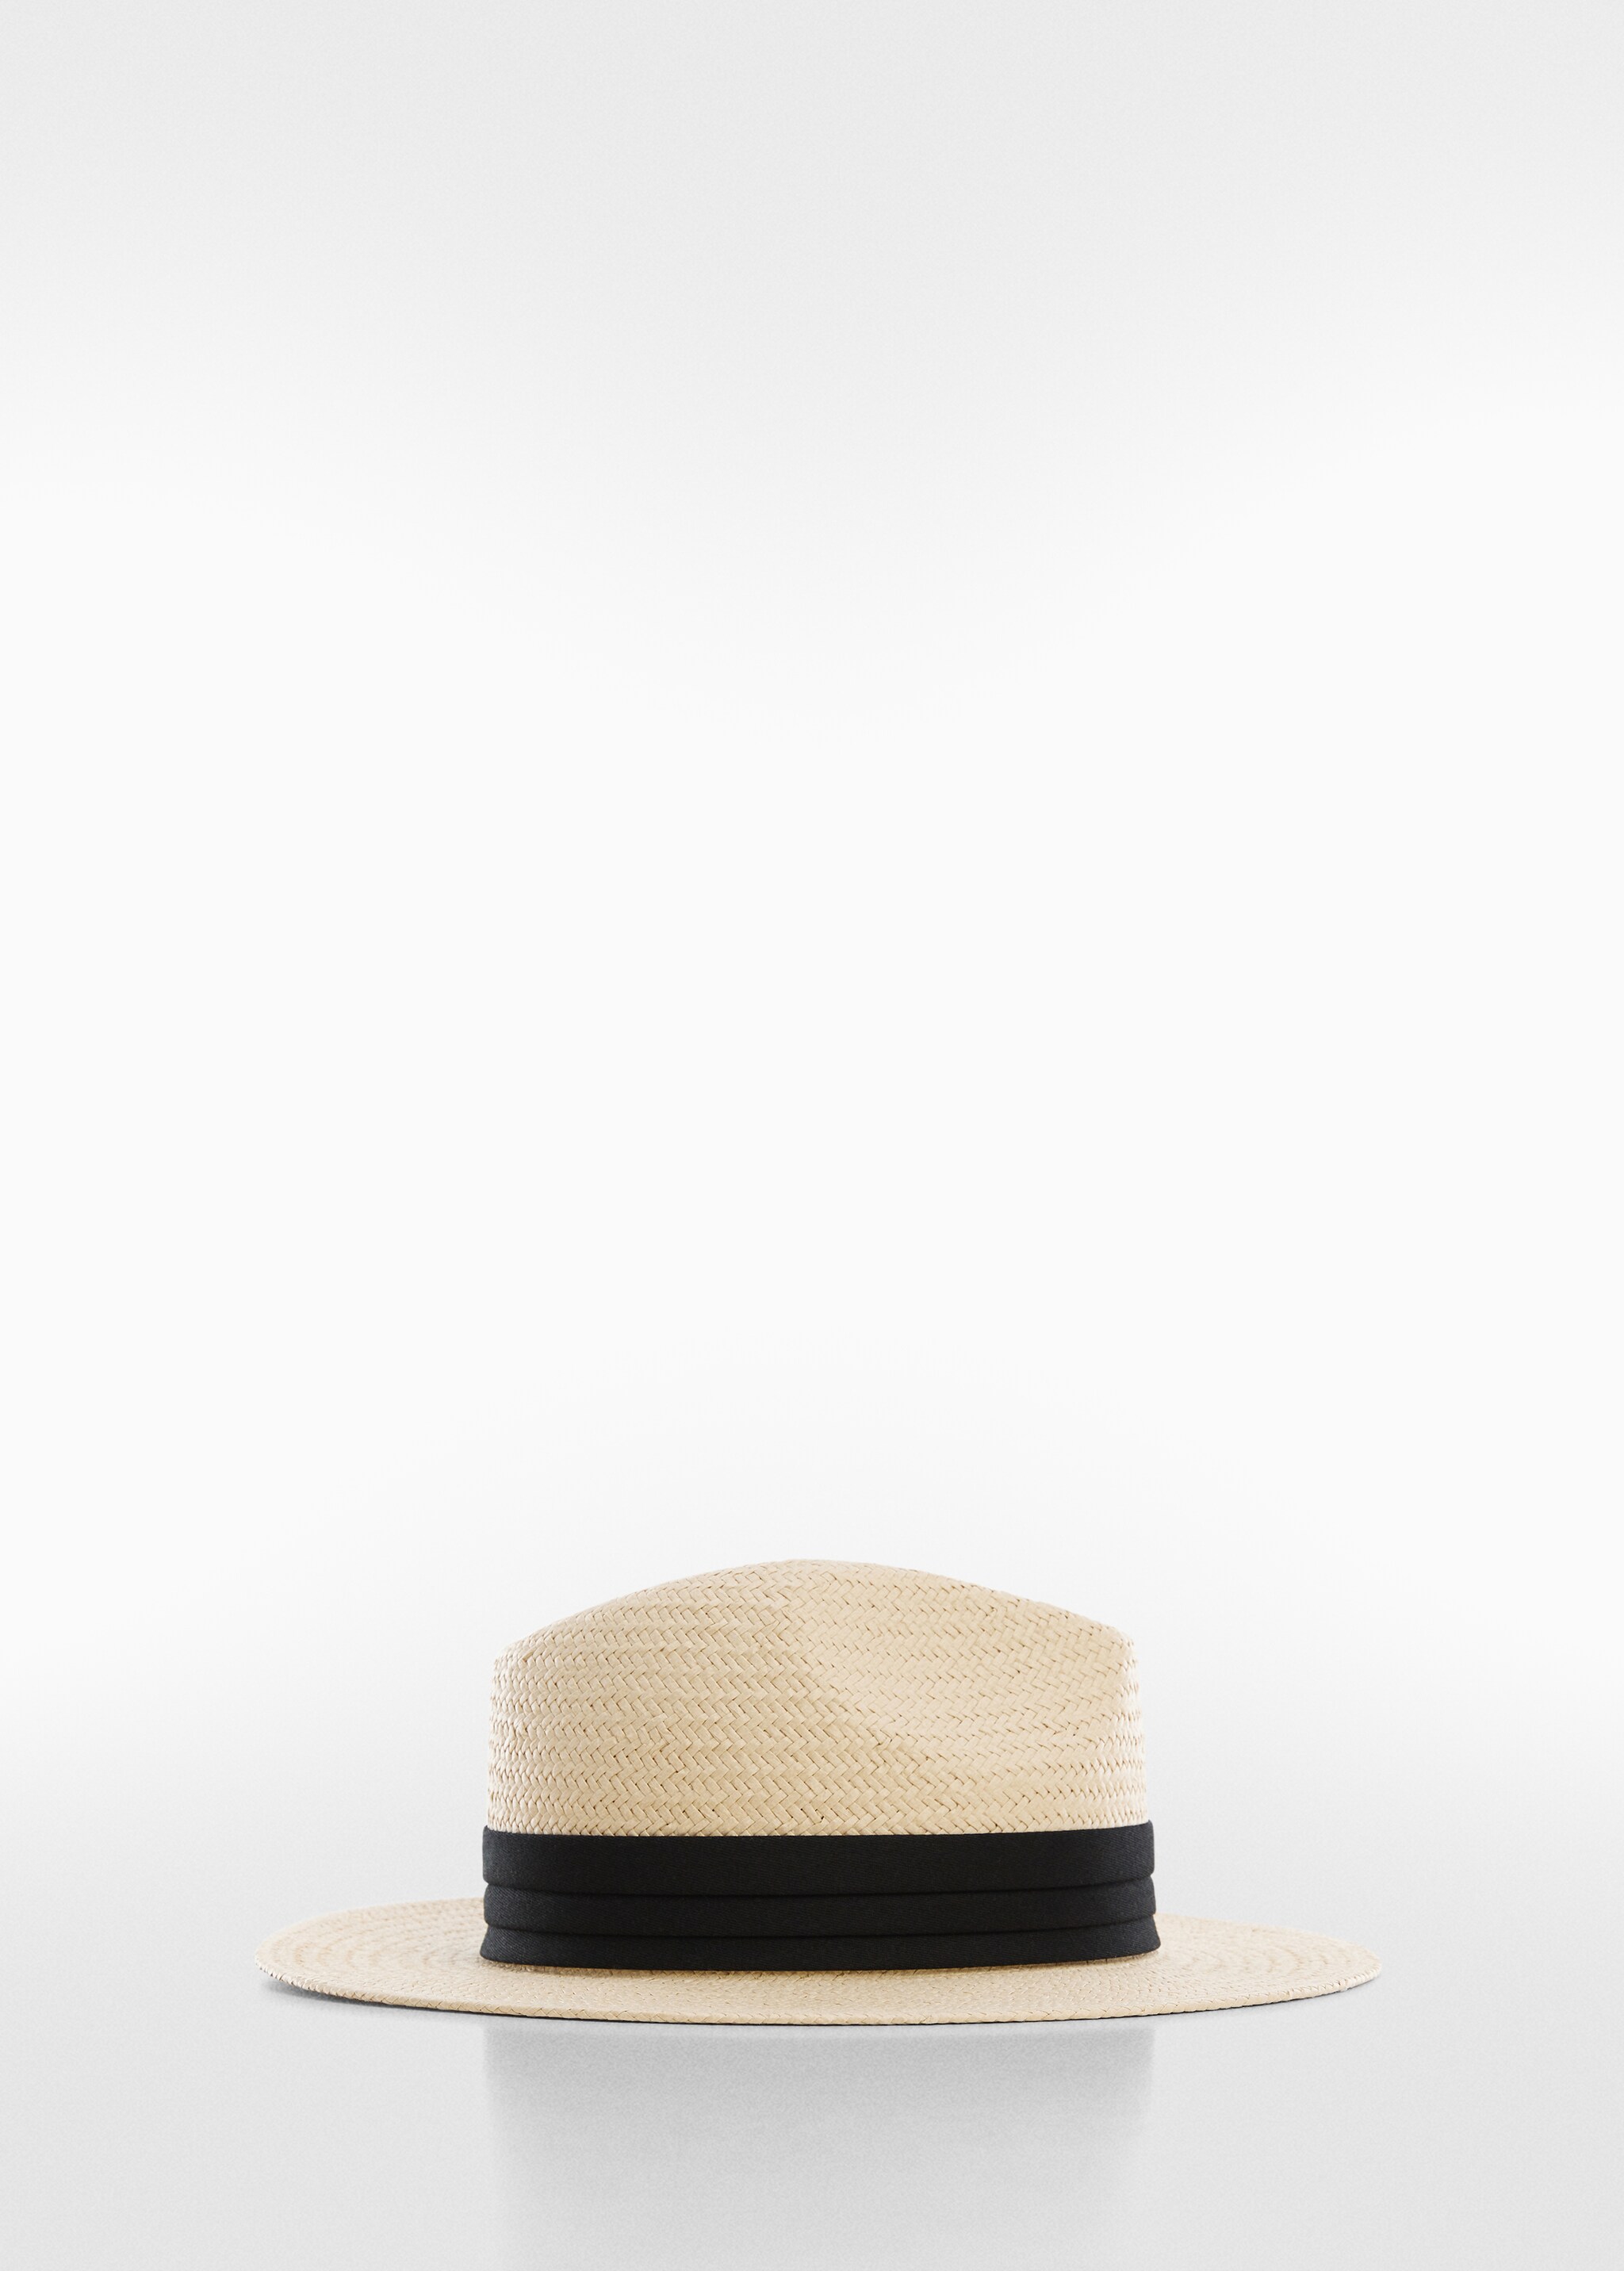 Cappello nastro fibra naturale  - Articolo senza modello